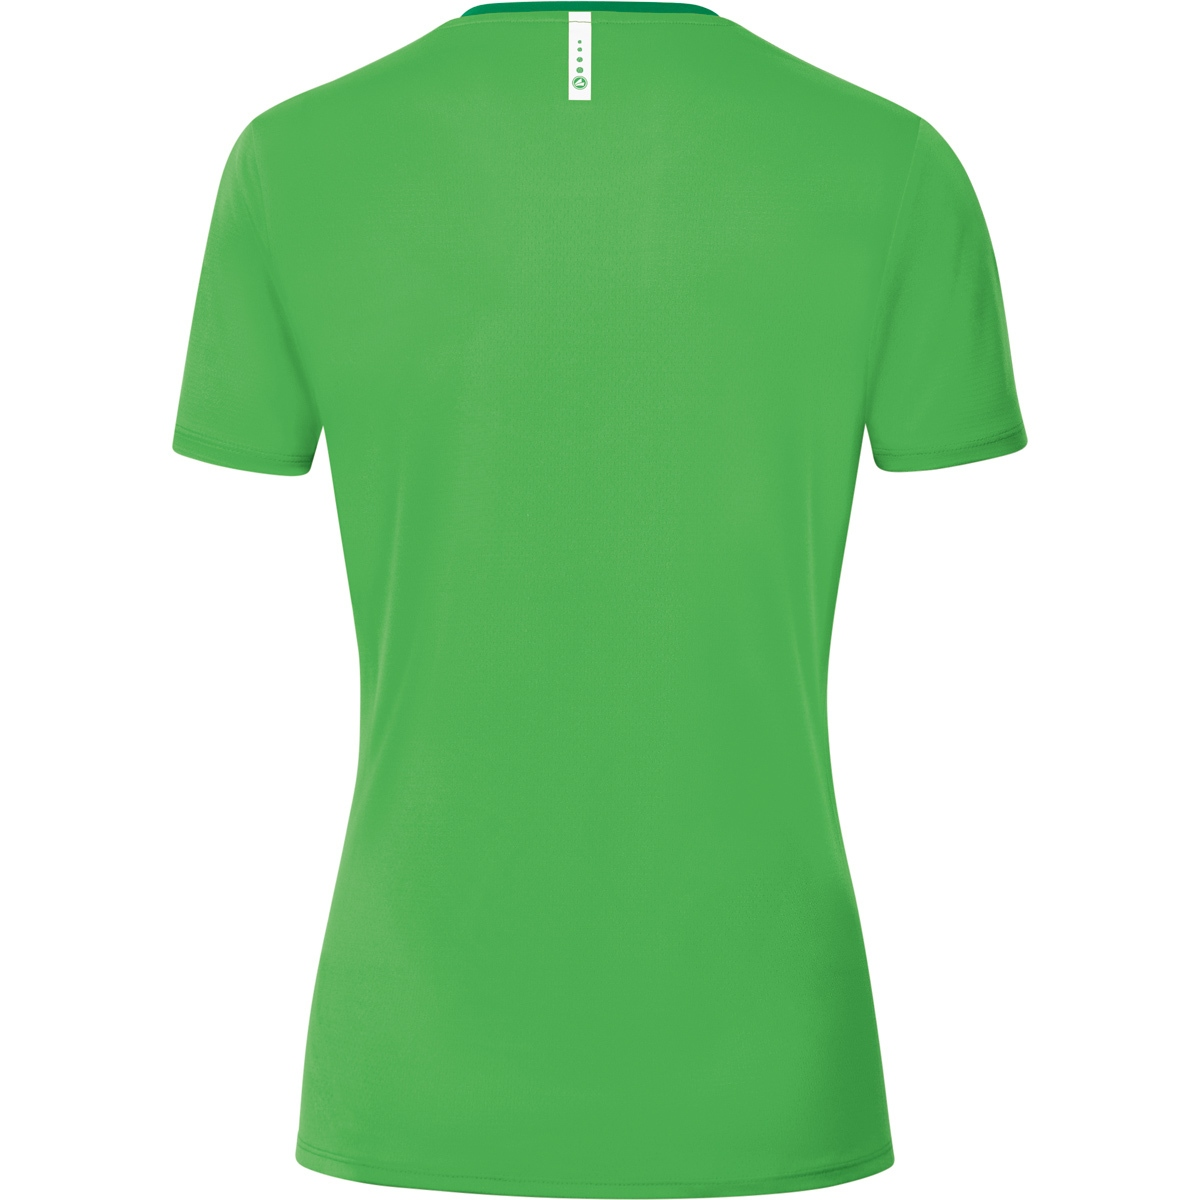 soft T-Shirt 2.0 Damen, Champ green/sportgrün, Gr. JAKO 36, 6120